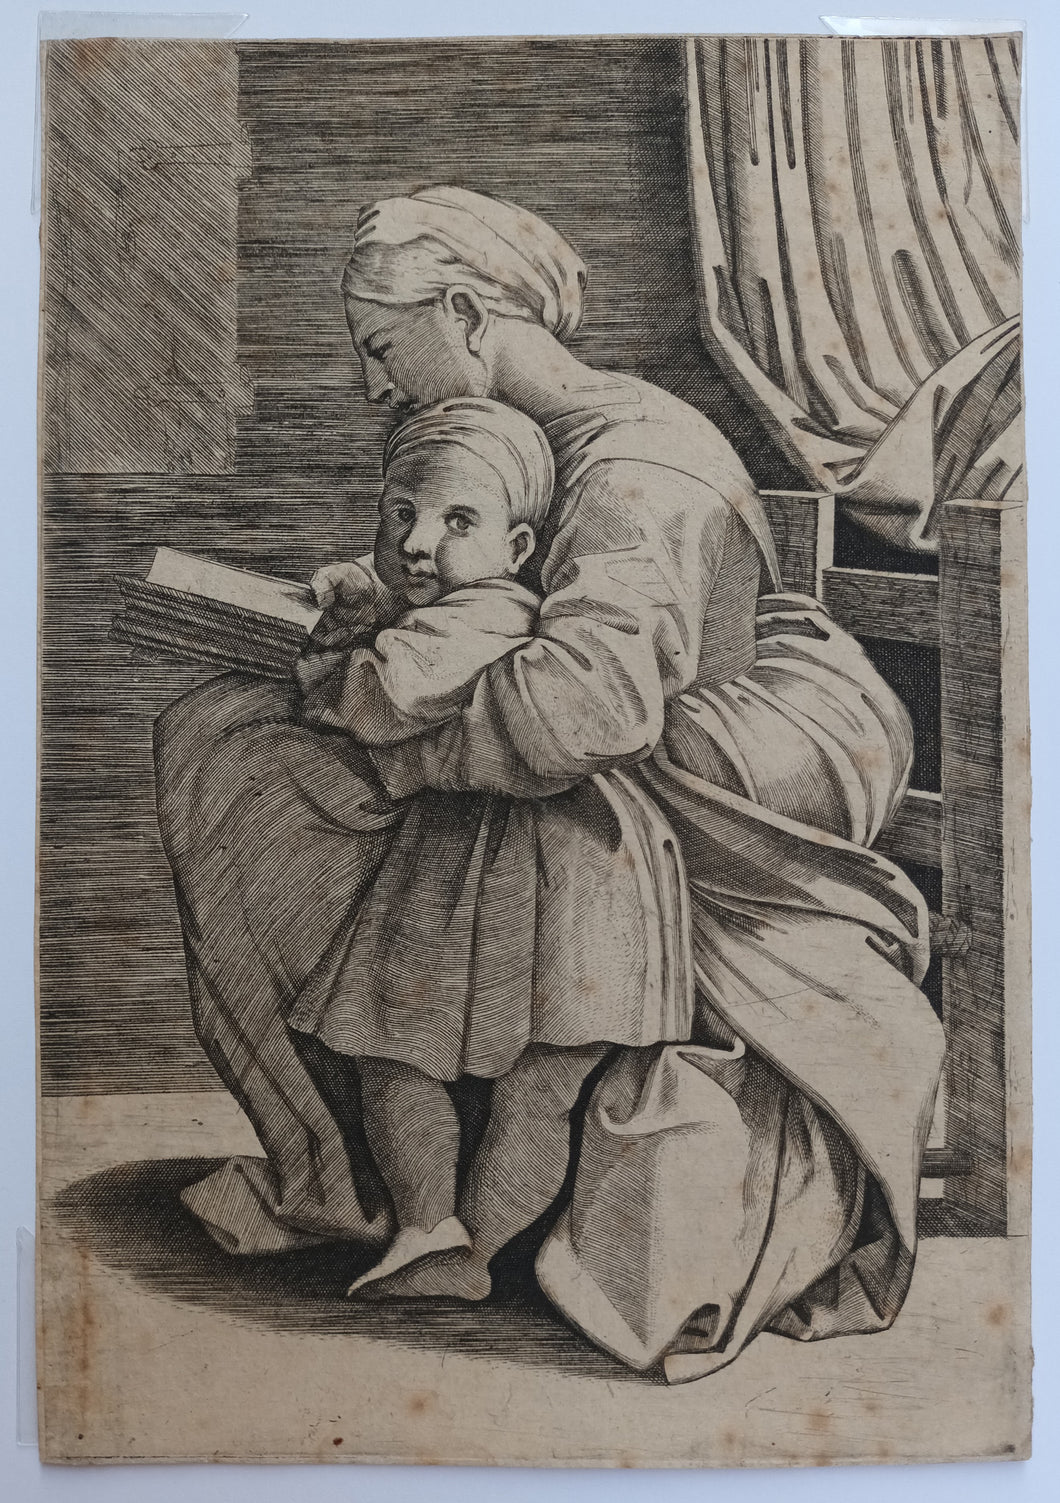 La Vierge lisant accompagnée de l'Enfant Jésus.